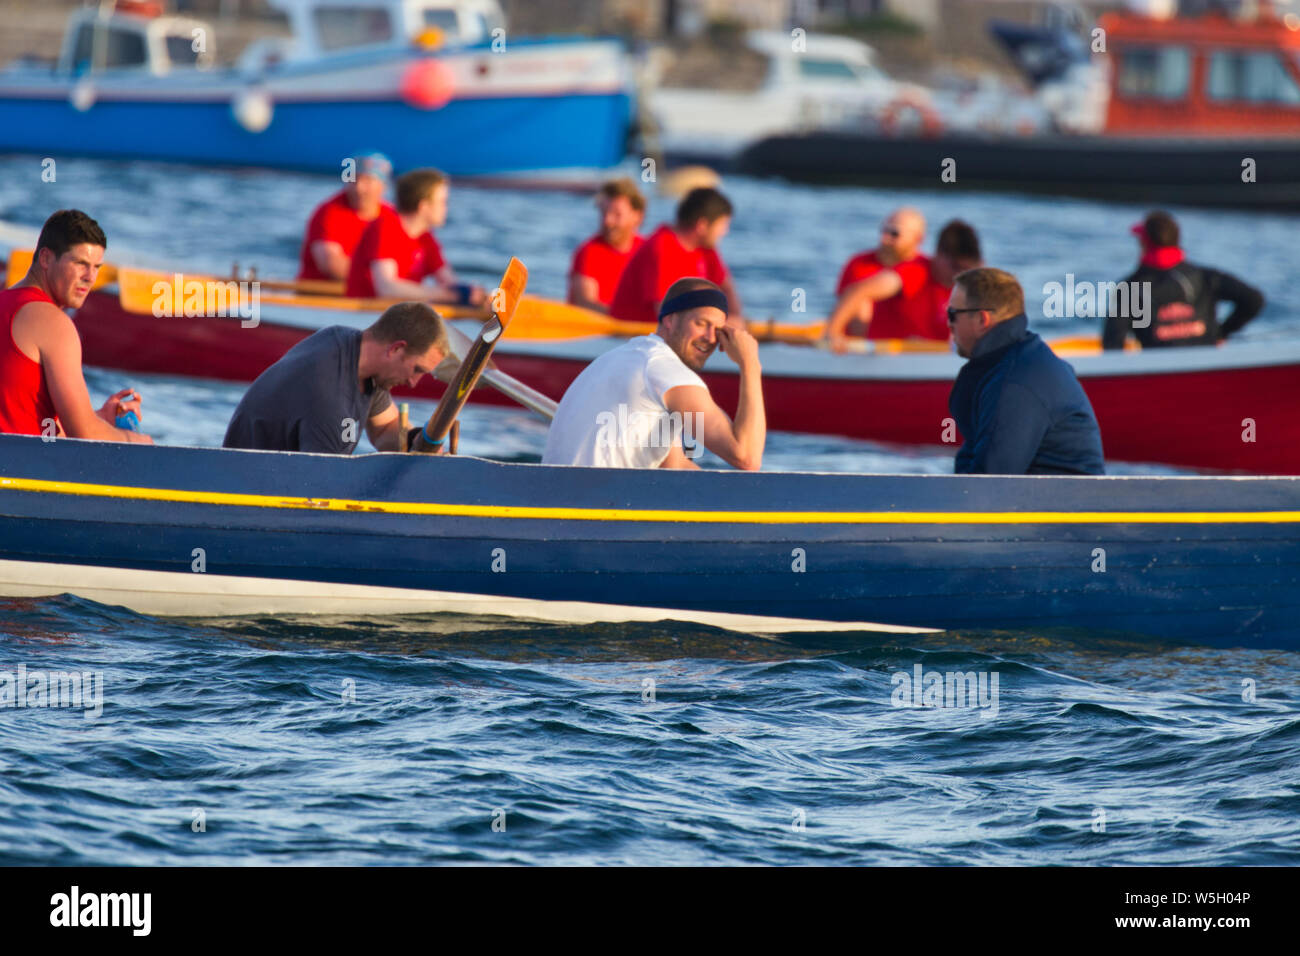 El Polvo Carrito Trophy - Islas de Scilly Viernes Men's Gig Boat Race Foto de stock